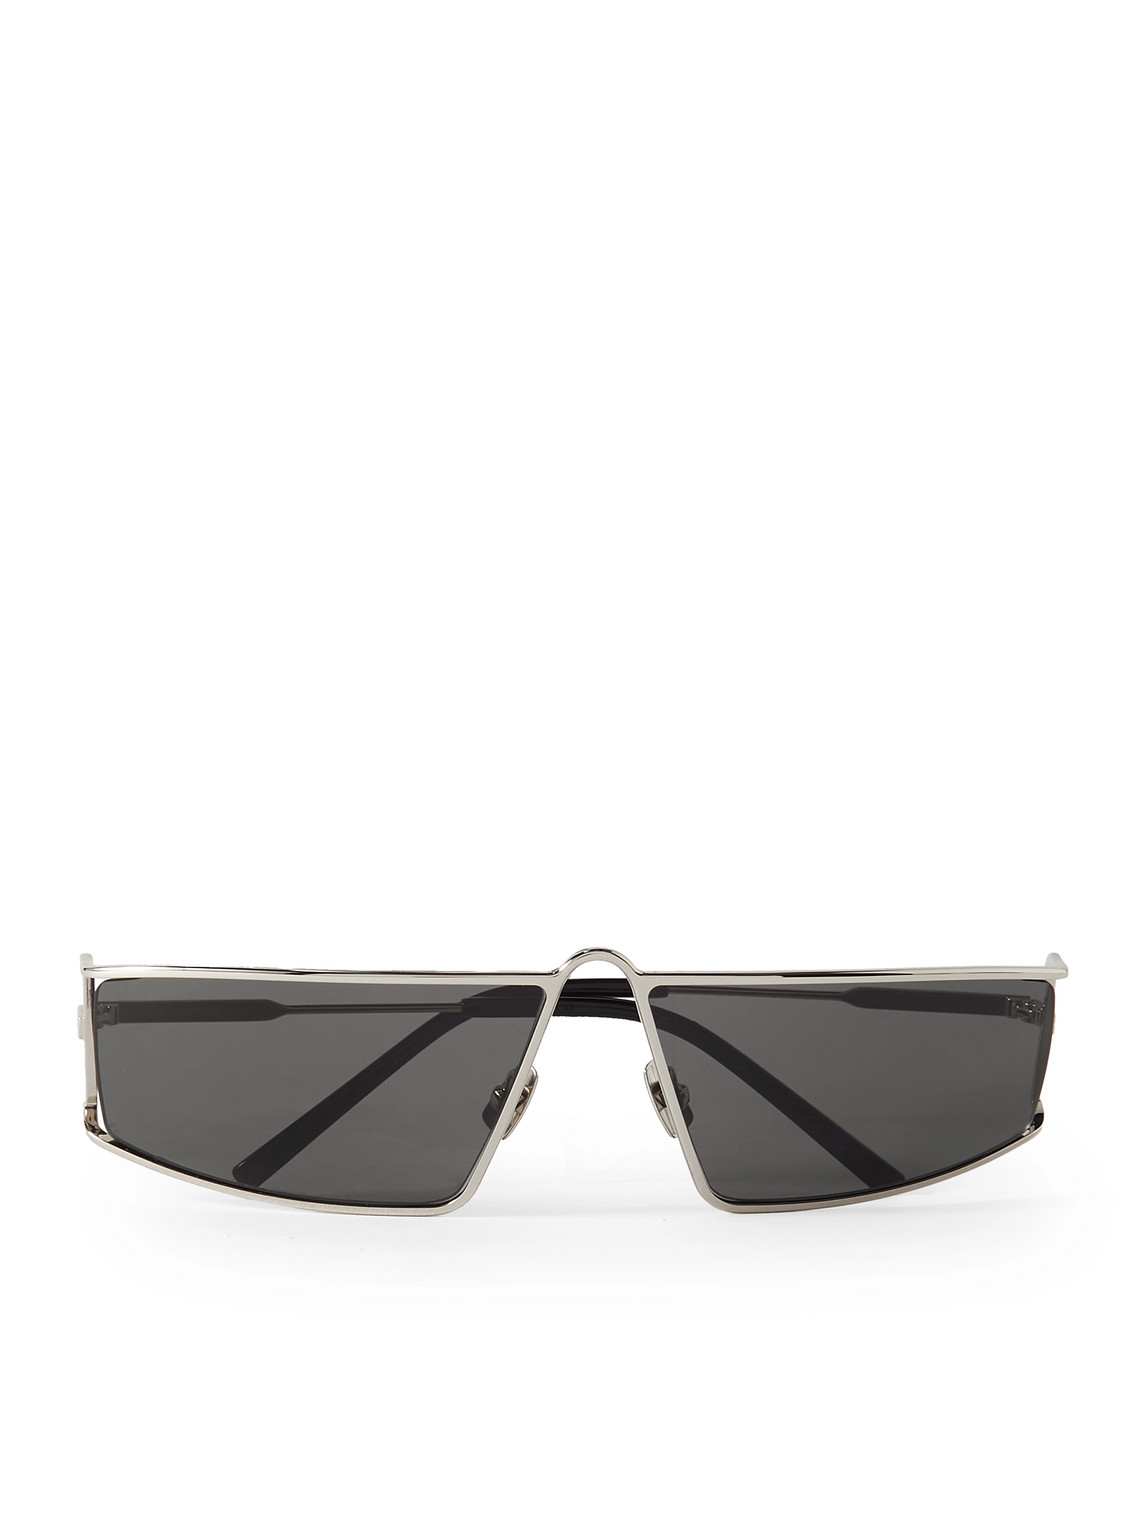 SAINT LAURENT - New Wave Rectangular-Frame Silver-Tone Sunglasses - Men - Silver von SAINT LAURENT